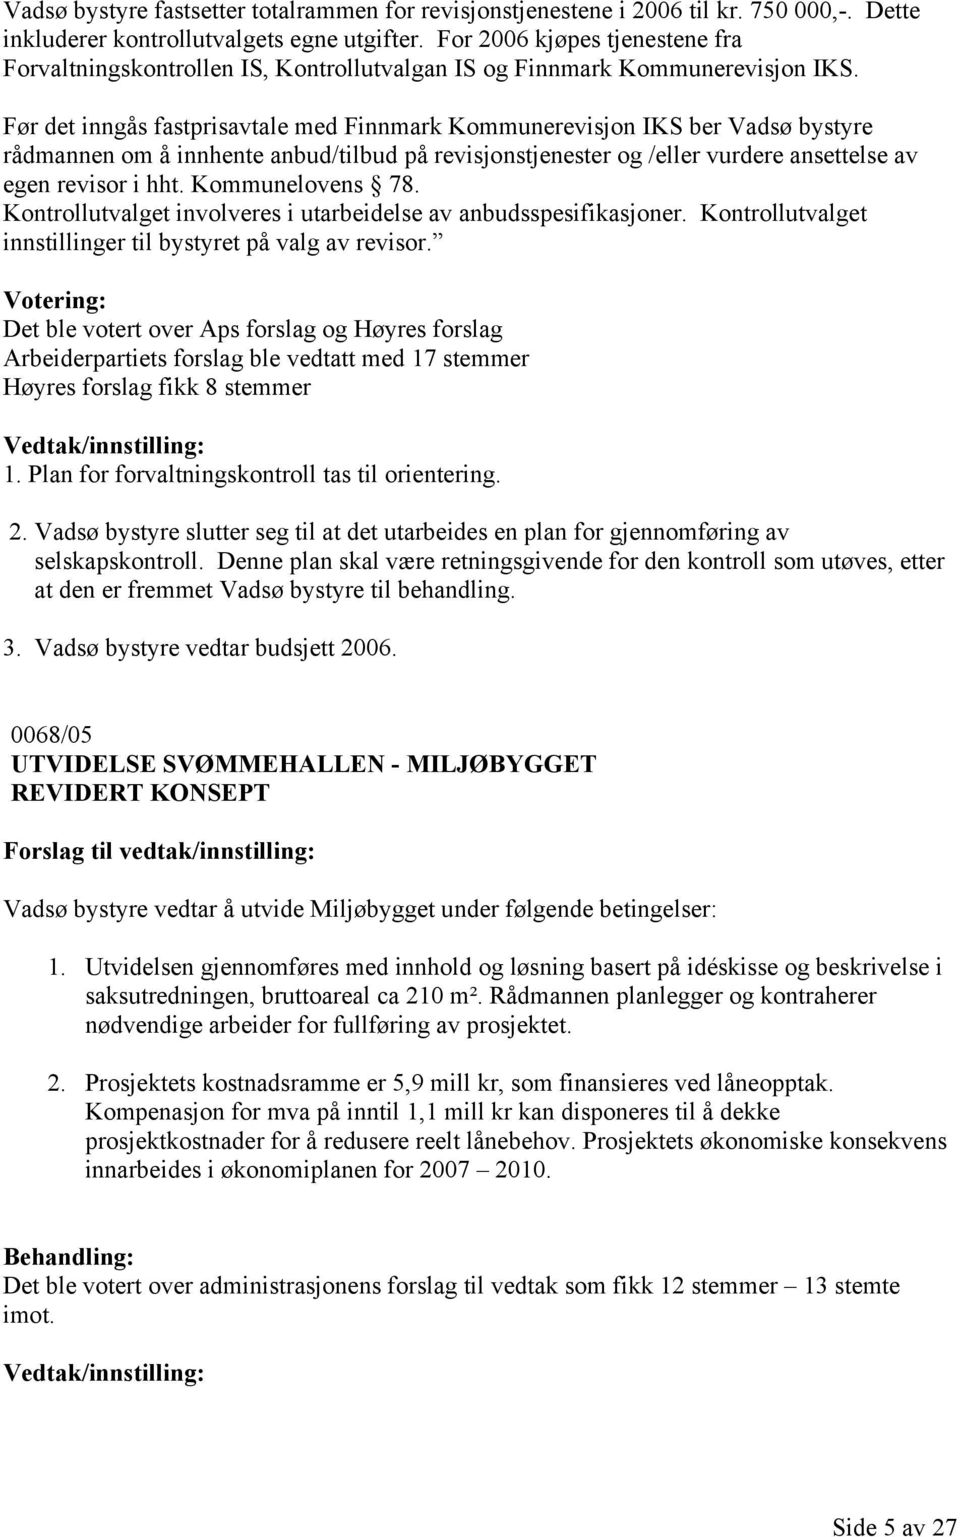 Før det inngås fastprisavtale med Finnmark Kommunerevisjon IKS ber Vadsø bystyre rådmannen om å innhente anbud/tilbud på revisjonstjenester og /eller vurdere ansettelse av egen revisor i hht.